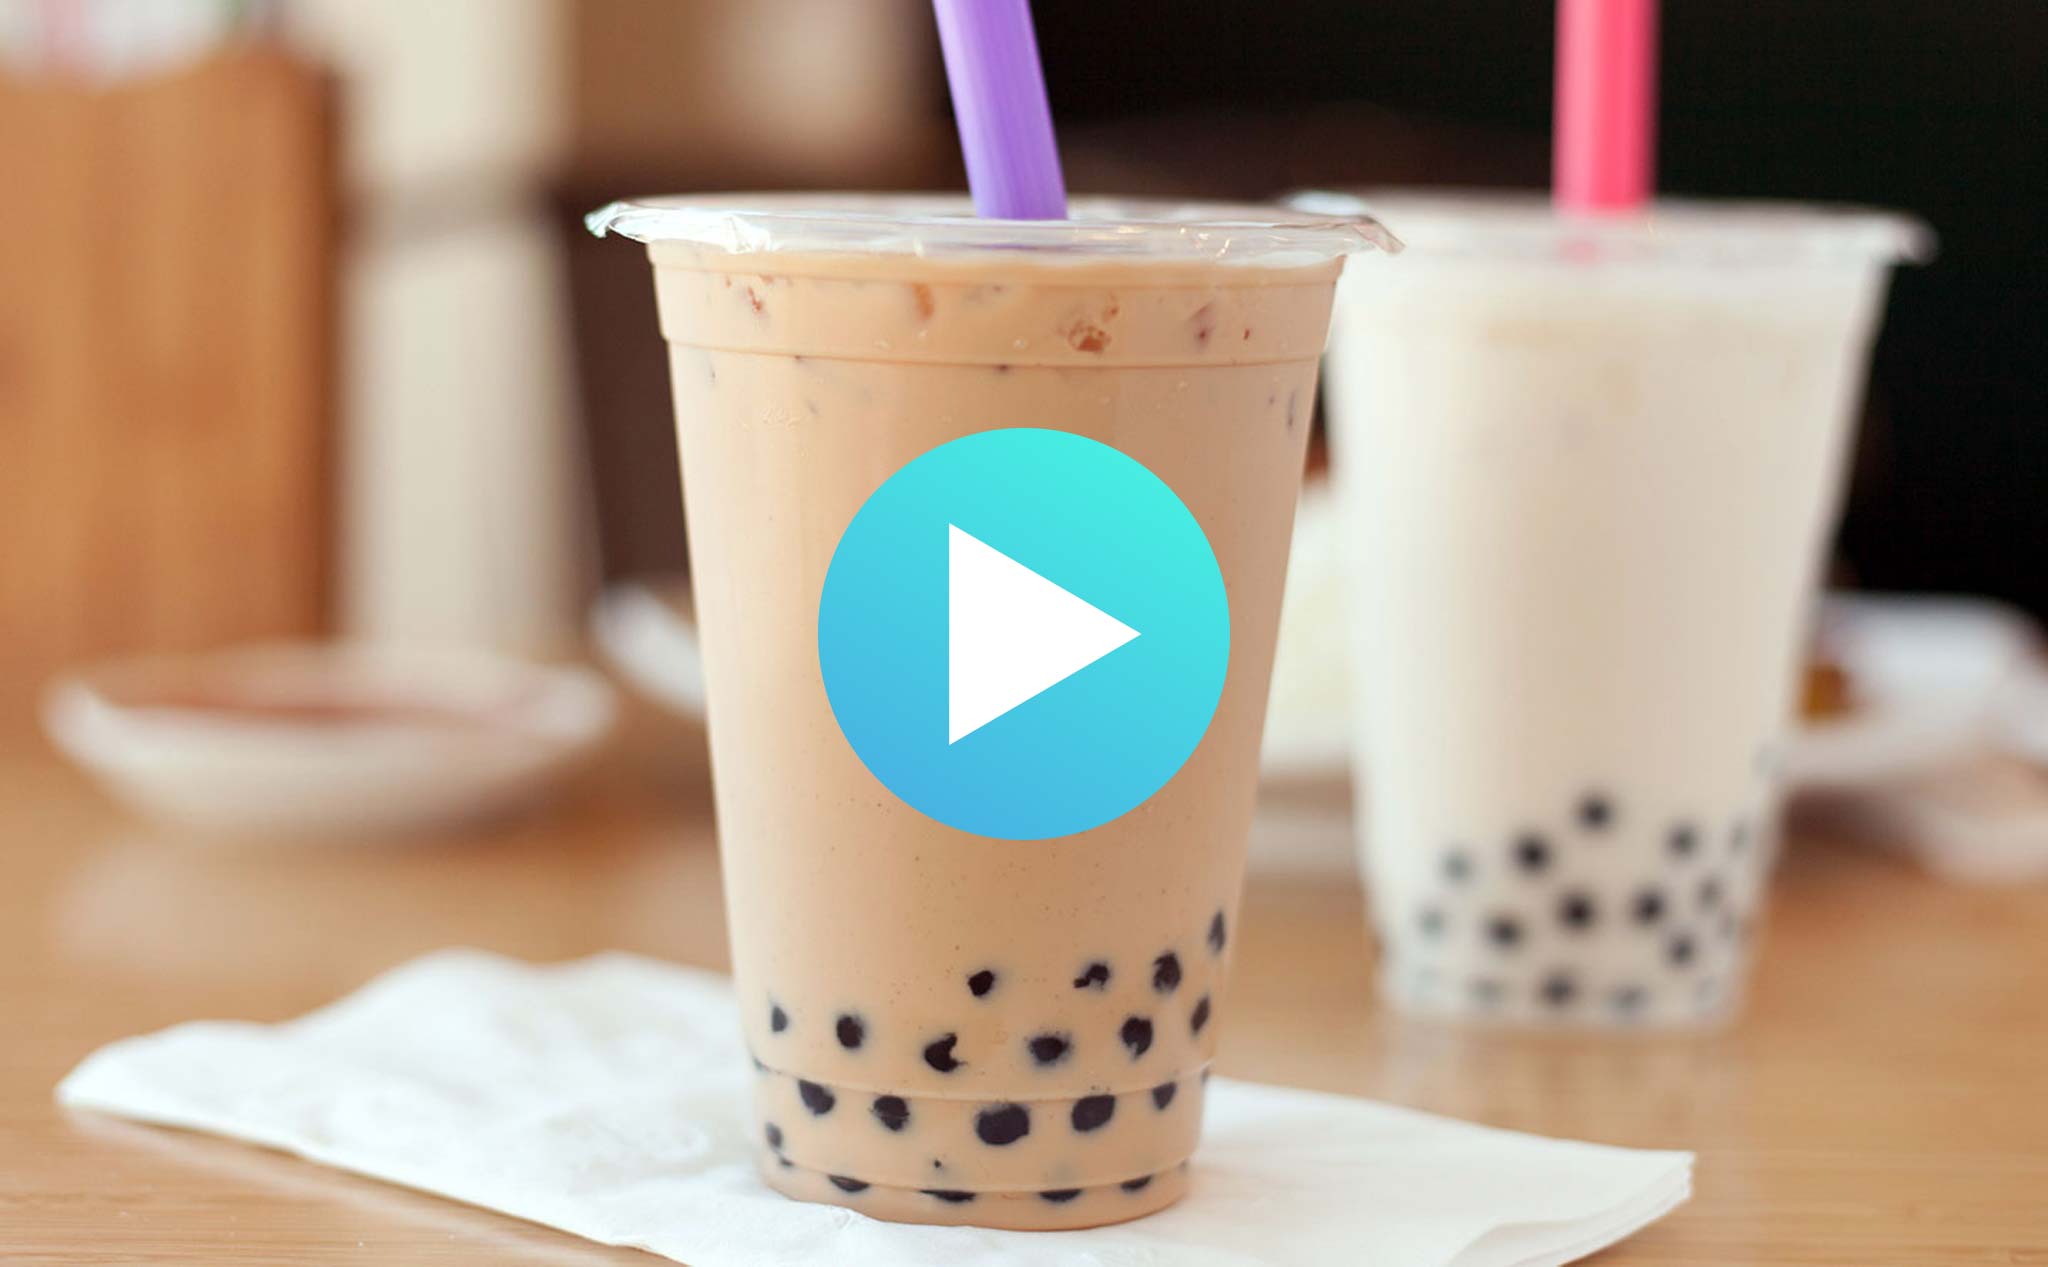 [Video] Có bao nhiêu đường trong mỗi ly trà sữa mà bạn uống?